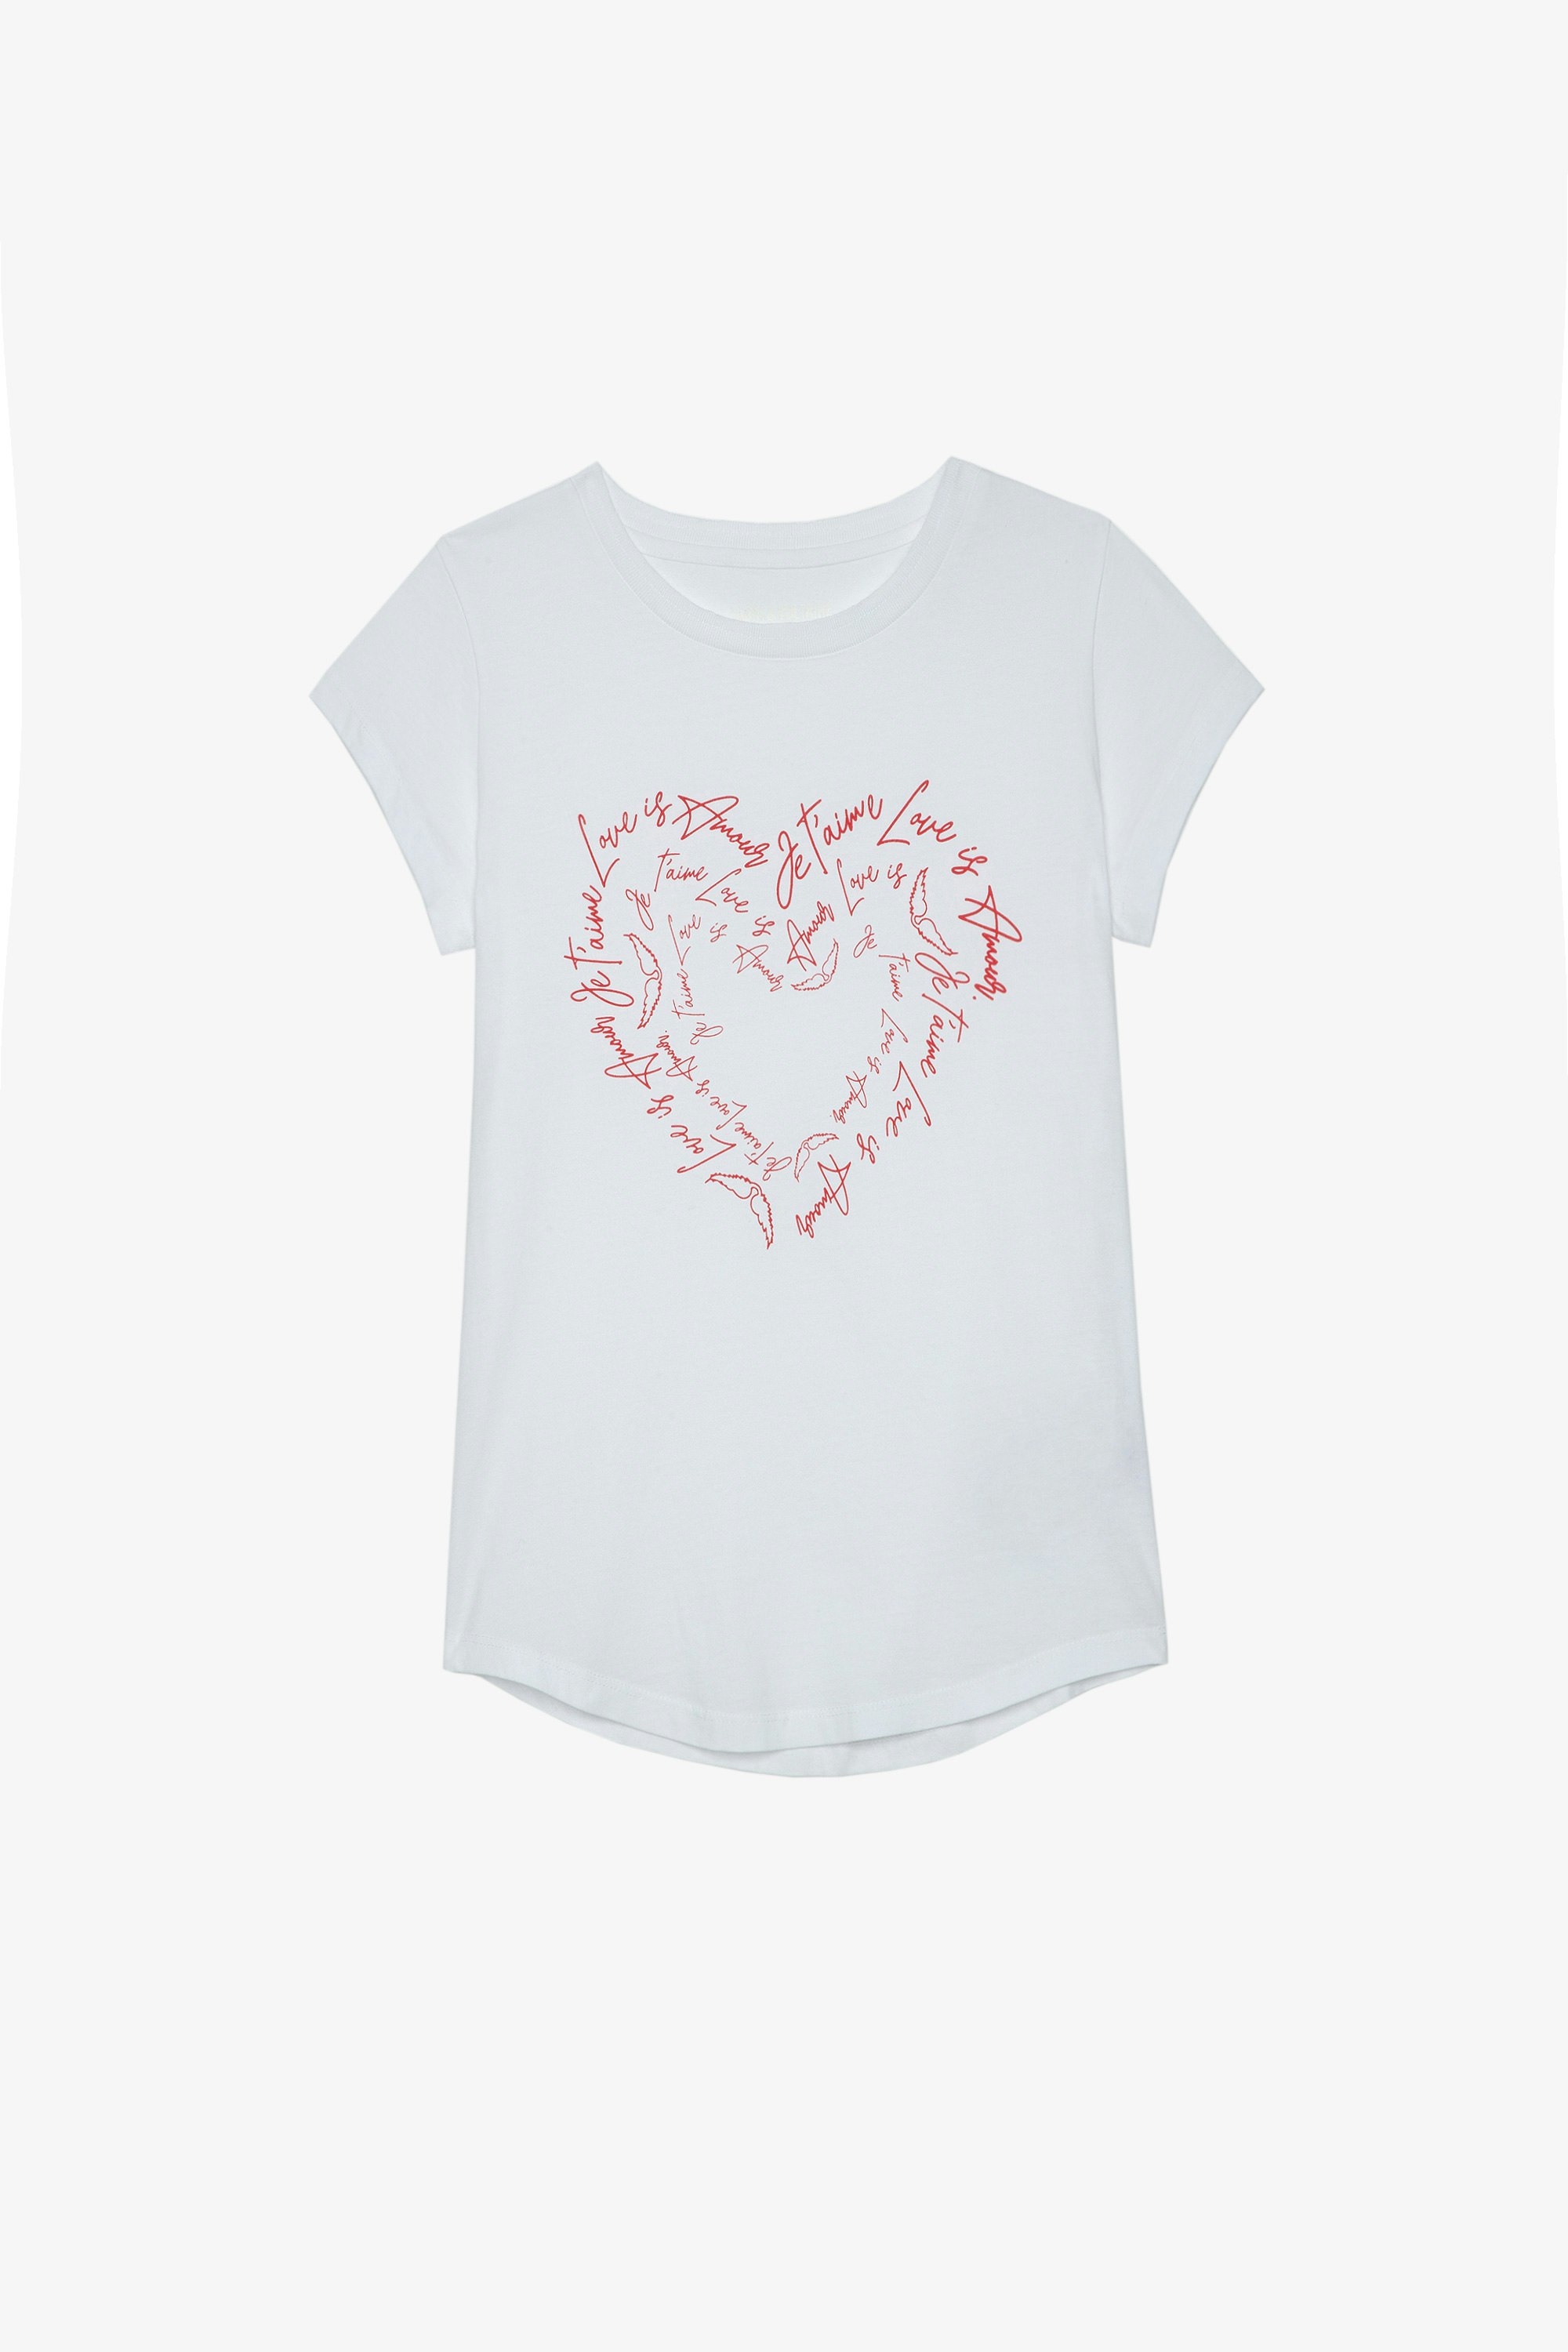 T-shirt Skinny Heart T-shirt in cotone bianco con messaggi d'amore a forma di cuore e cristalli